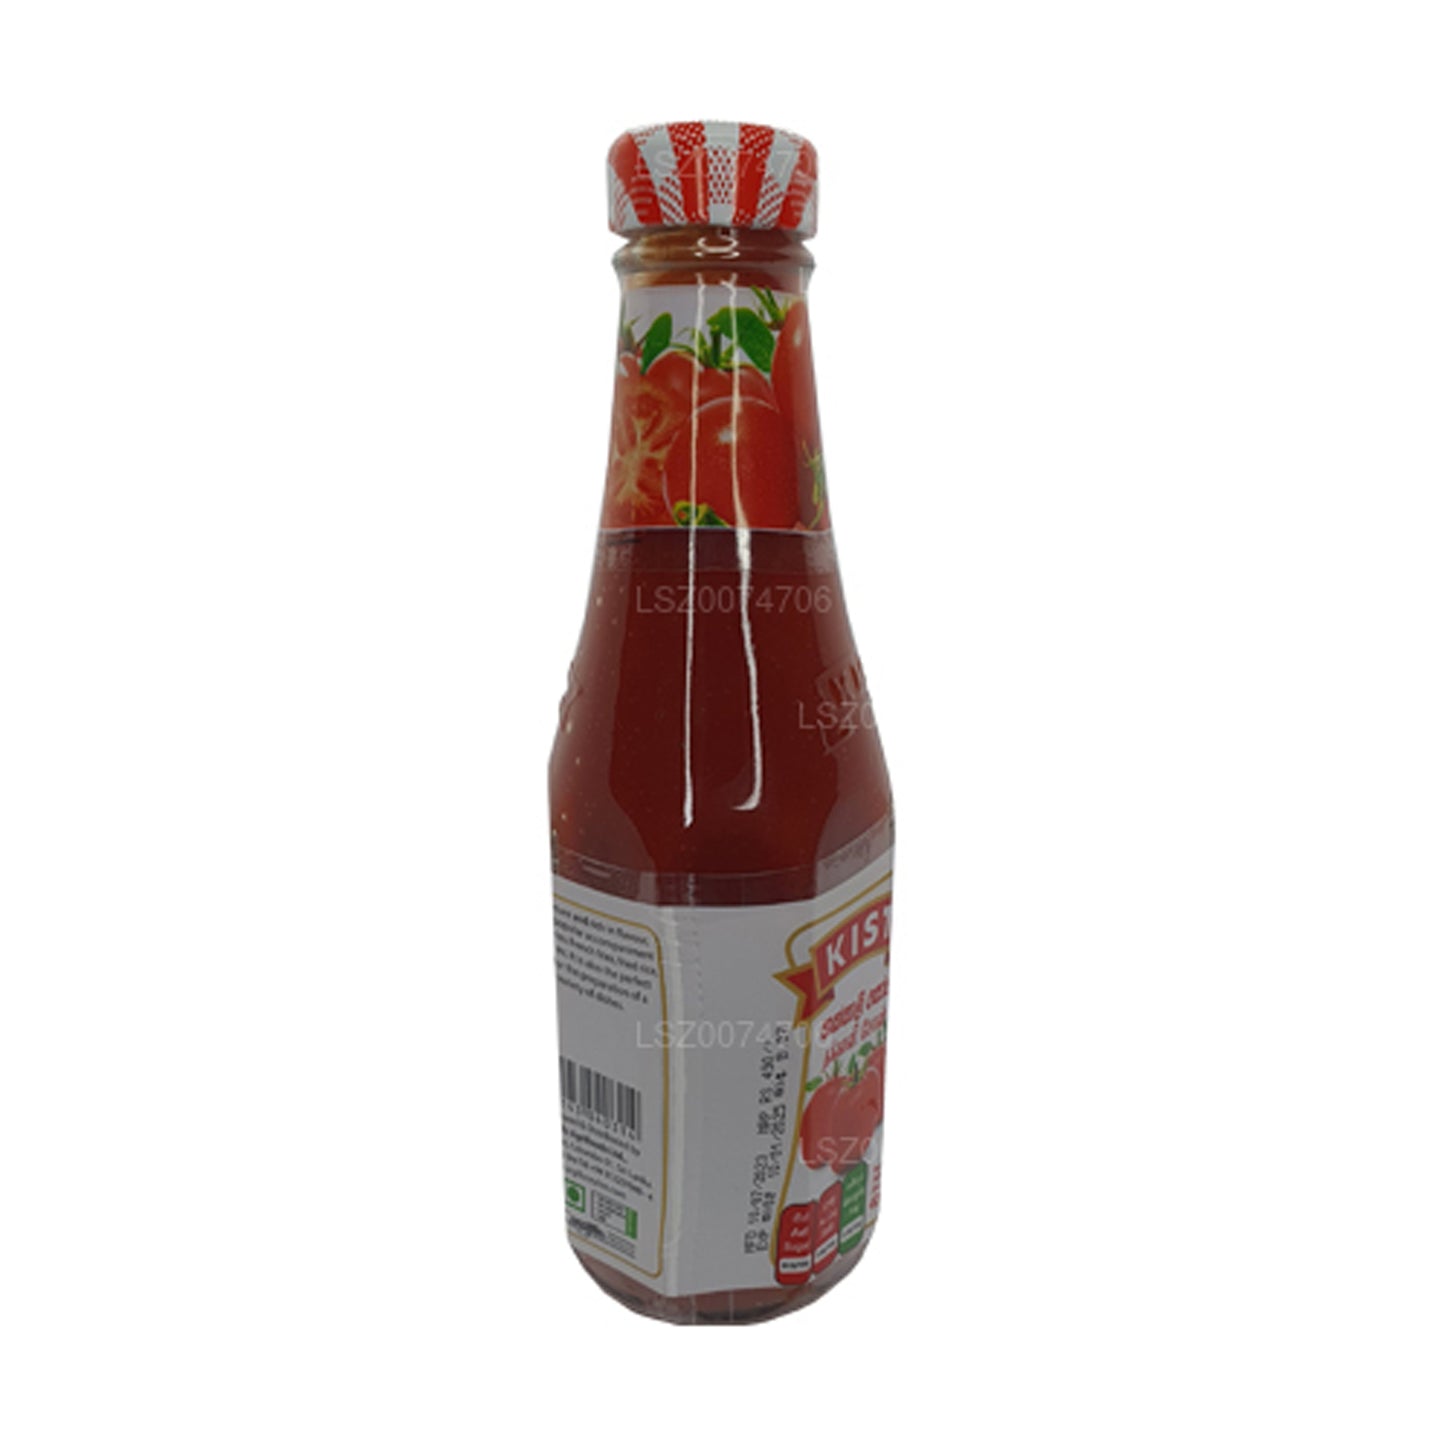 Kist Tomato Sauce (400g)